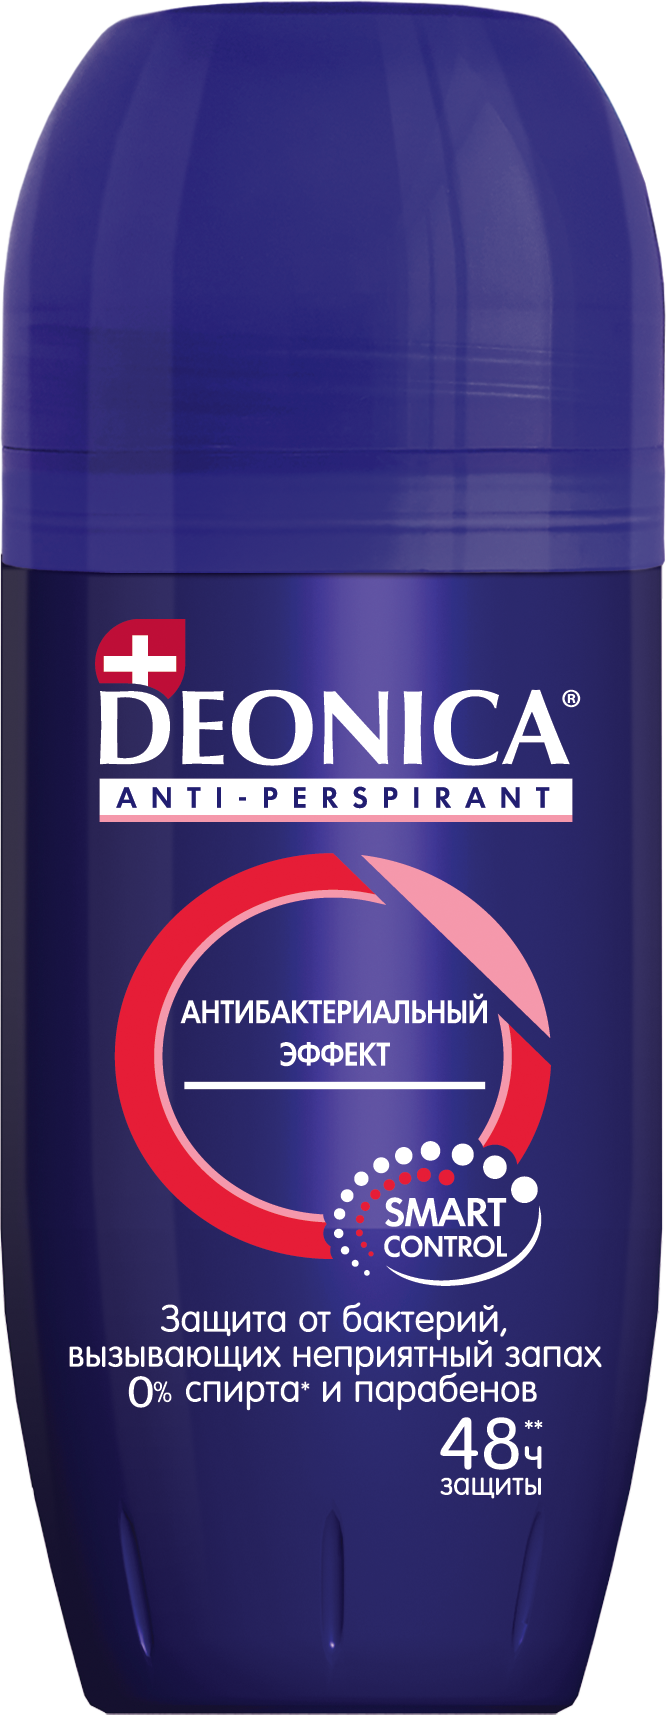 фото упаковки Deonica Антиперспирант For men Антибактериальный эффект